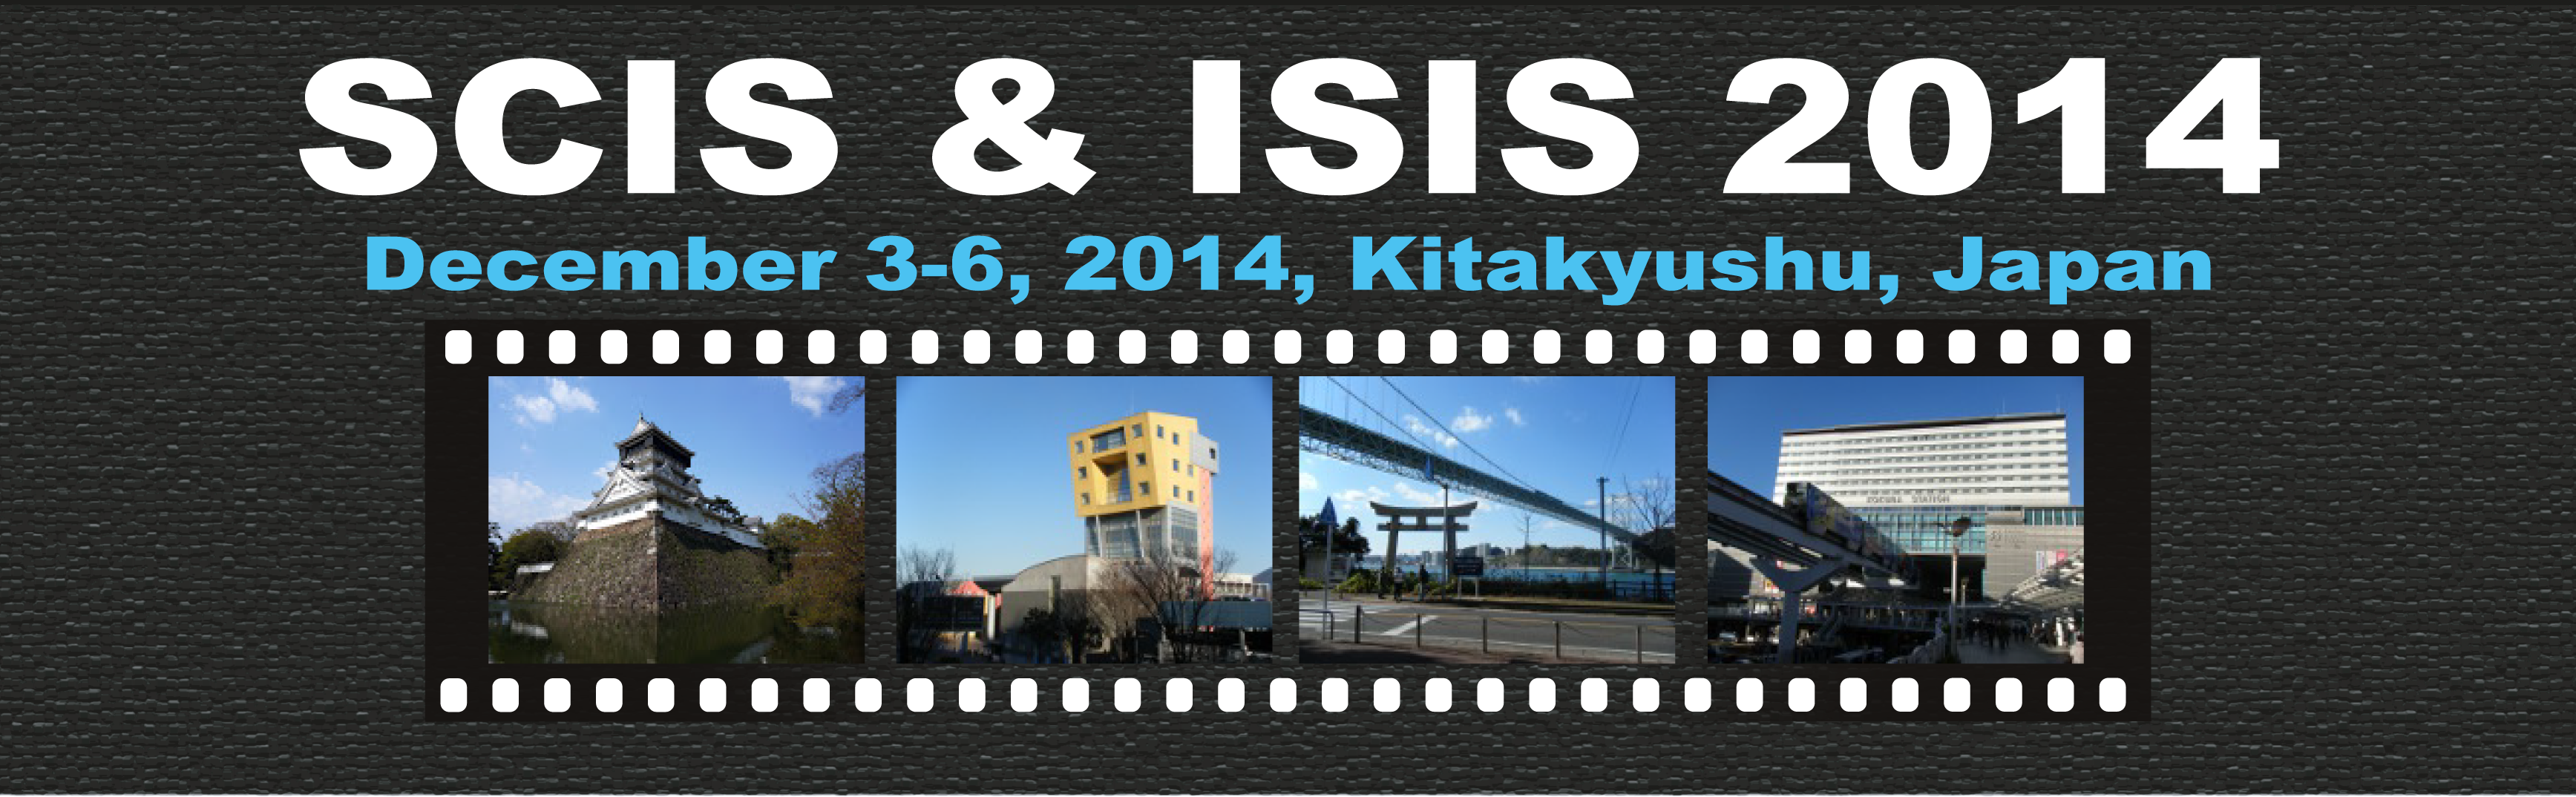 SCIS & ISIS 2014